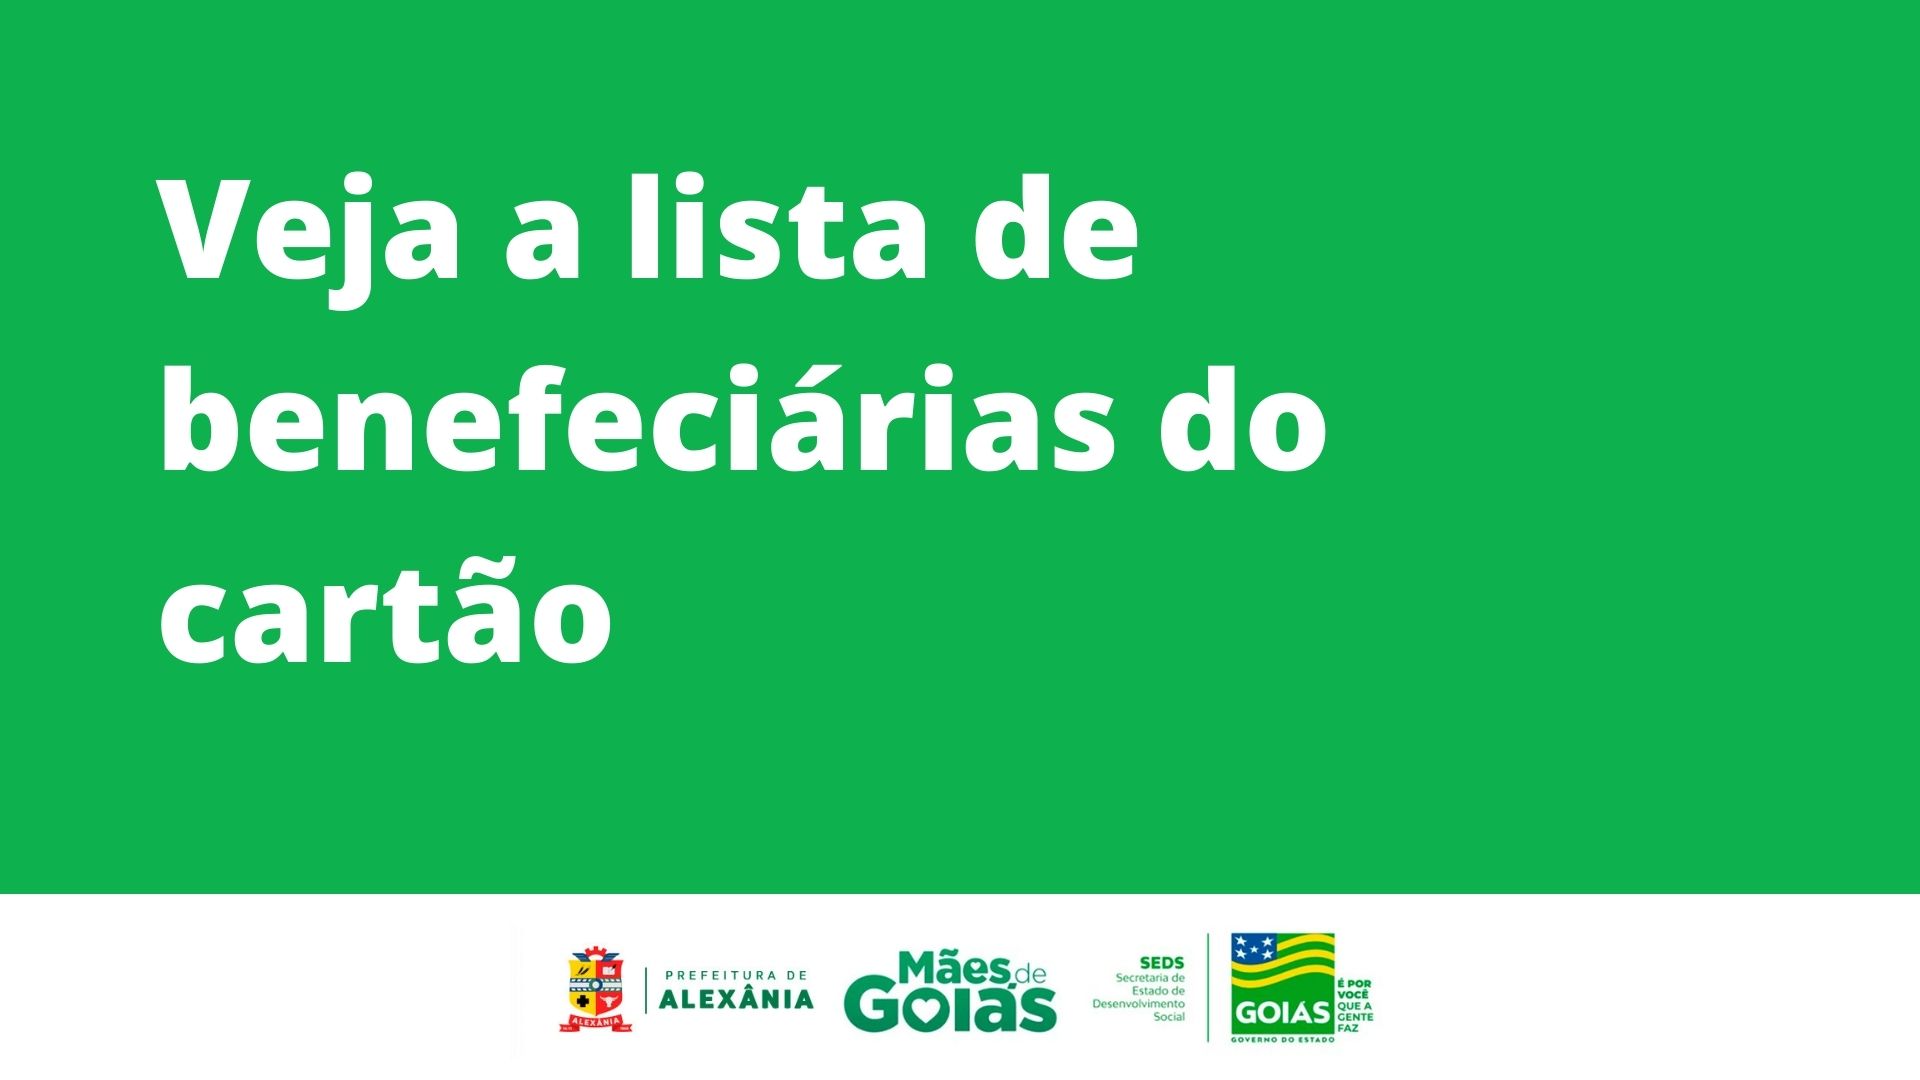 Veja aqui a lista de beneficiárias do Programa Mães de Goiás